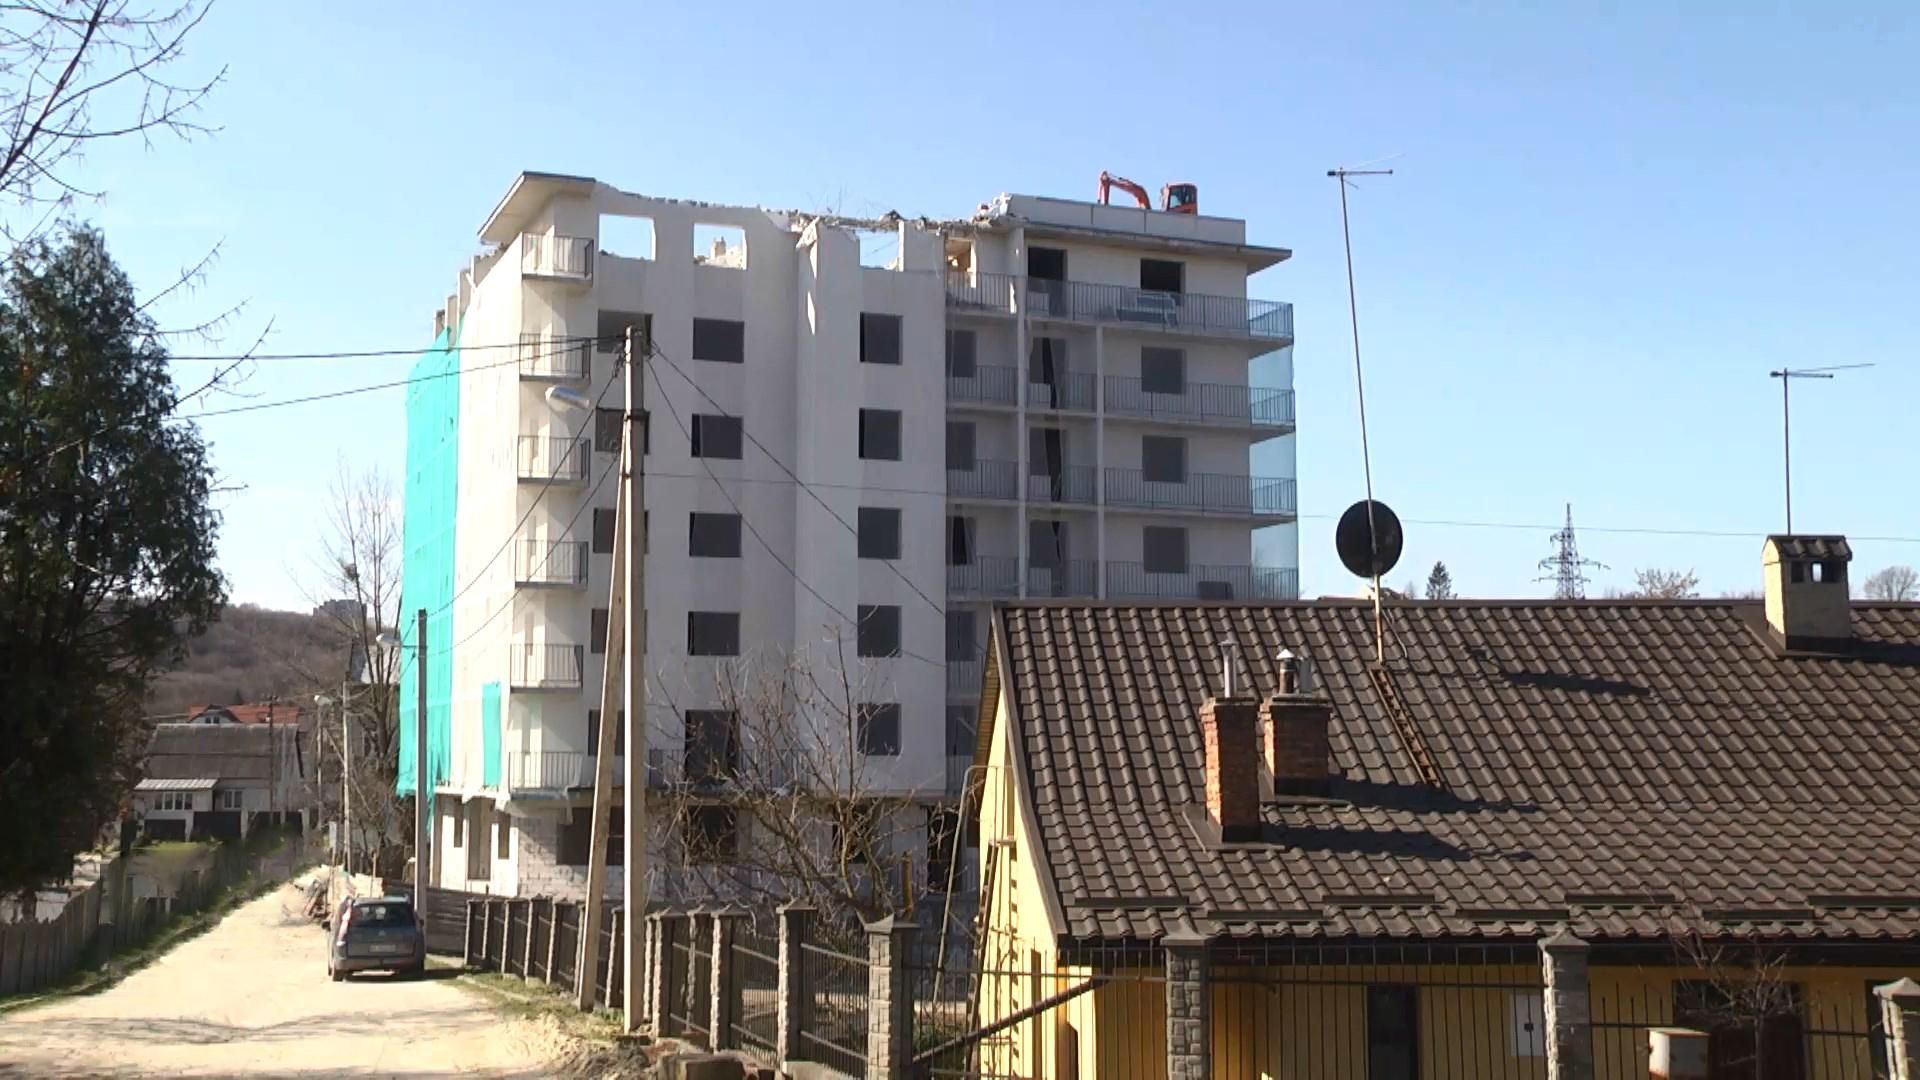 Впервые в Украине: скандальный дом без документов начали сносить во Львове